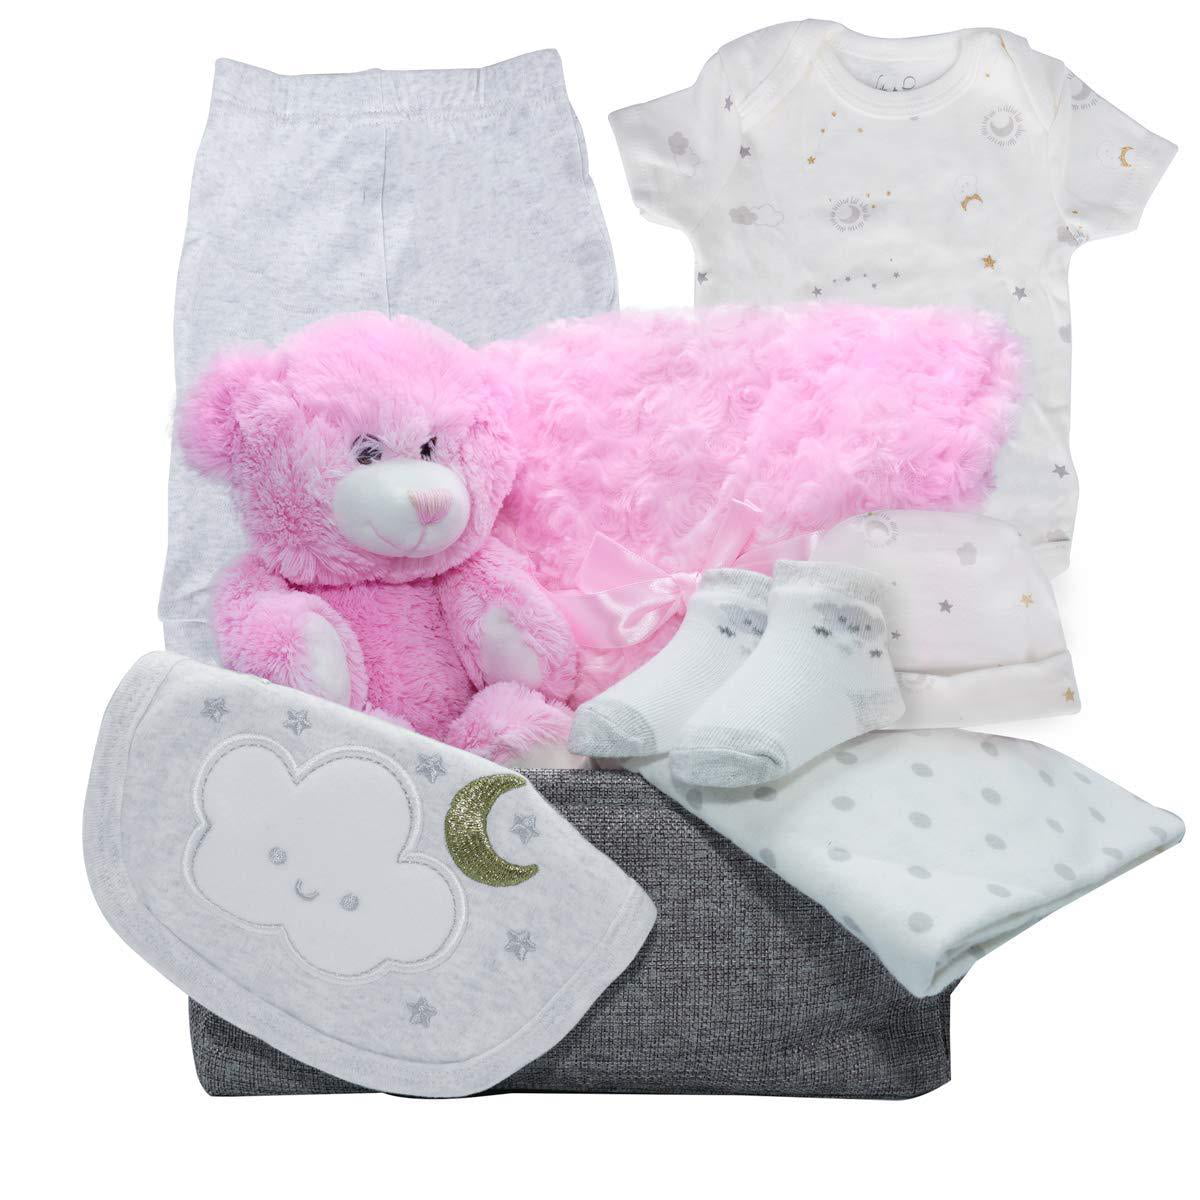 6 Piece Baby Essentials for Newborn Unisex Gift Boys and Girls… Layette Set 